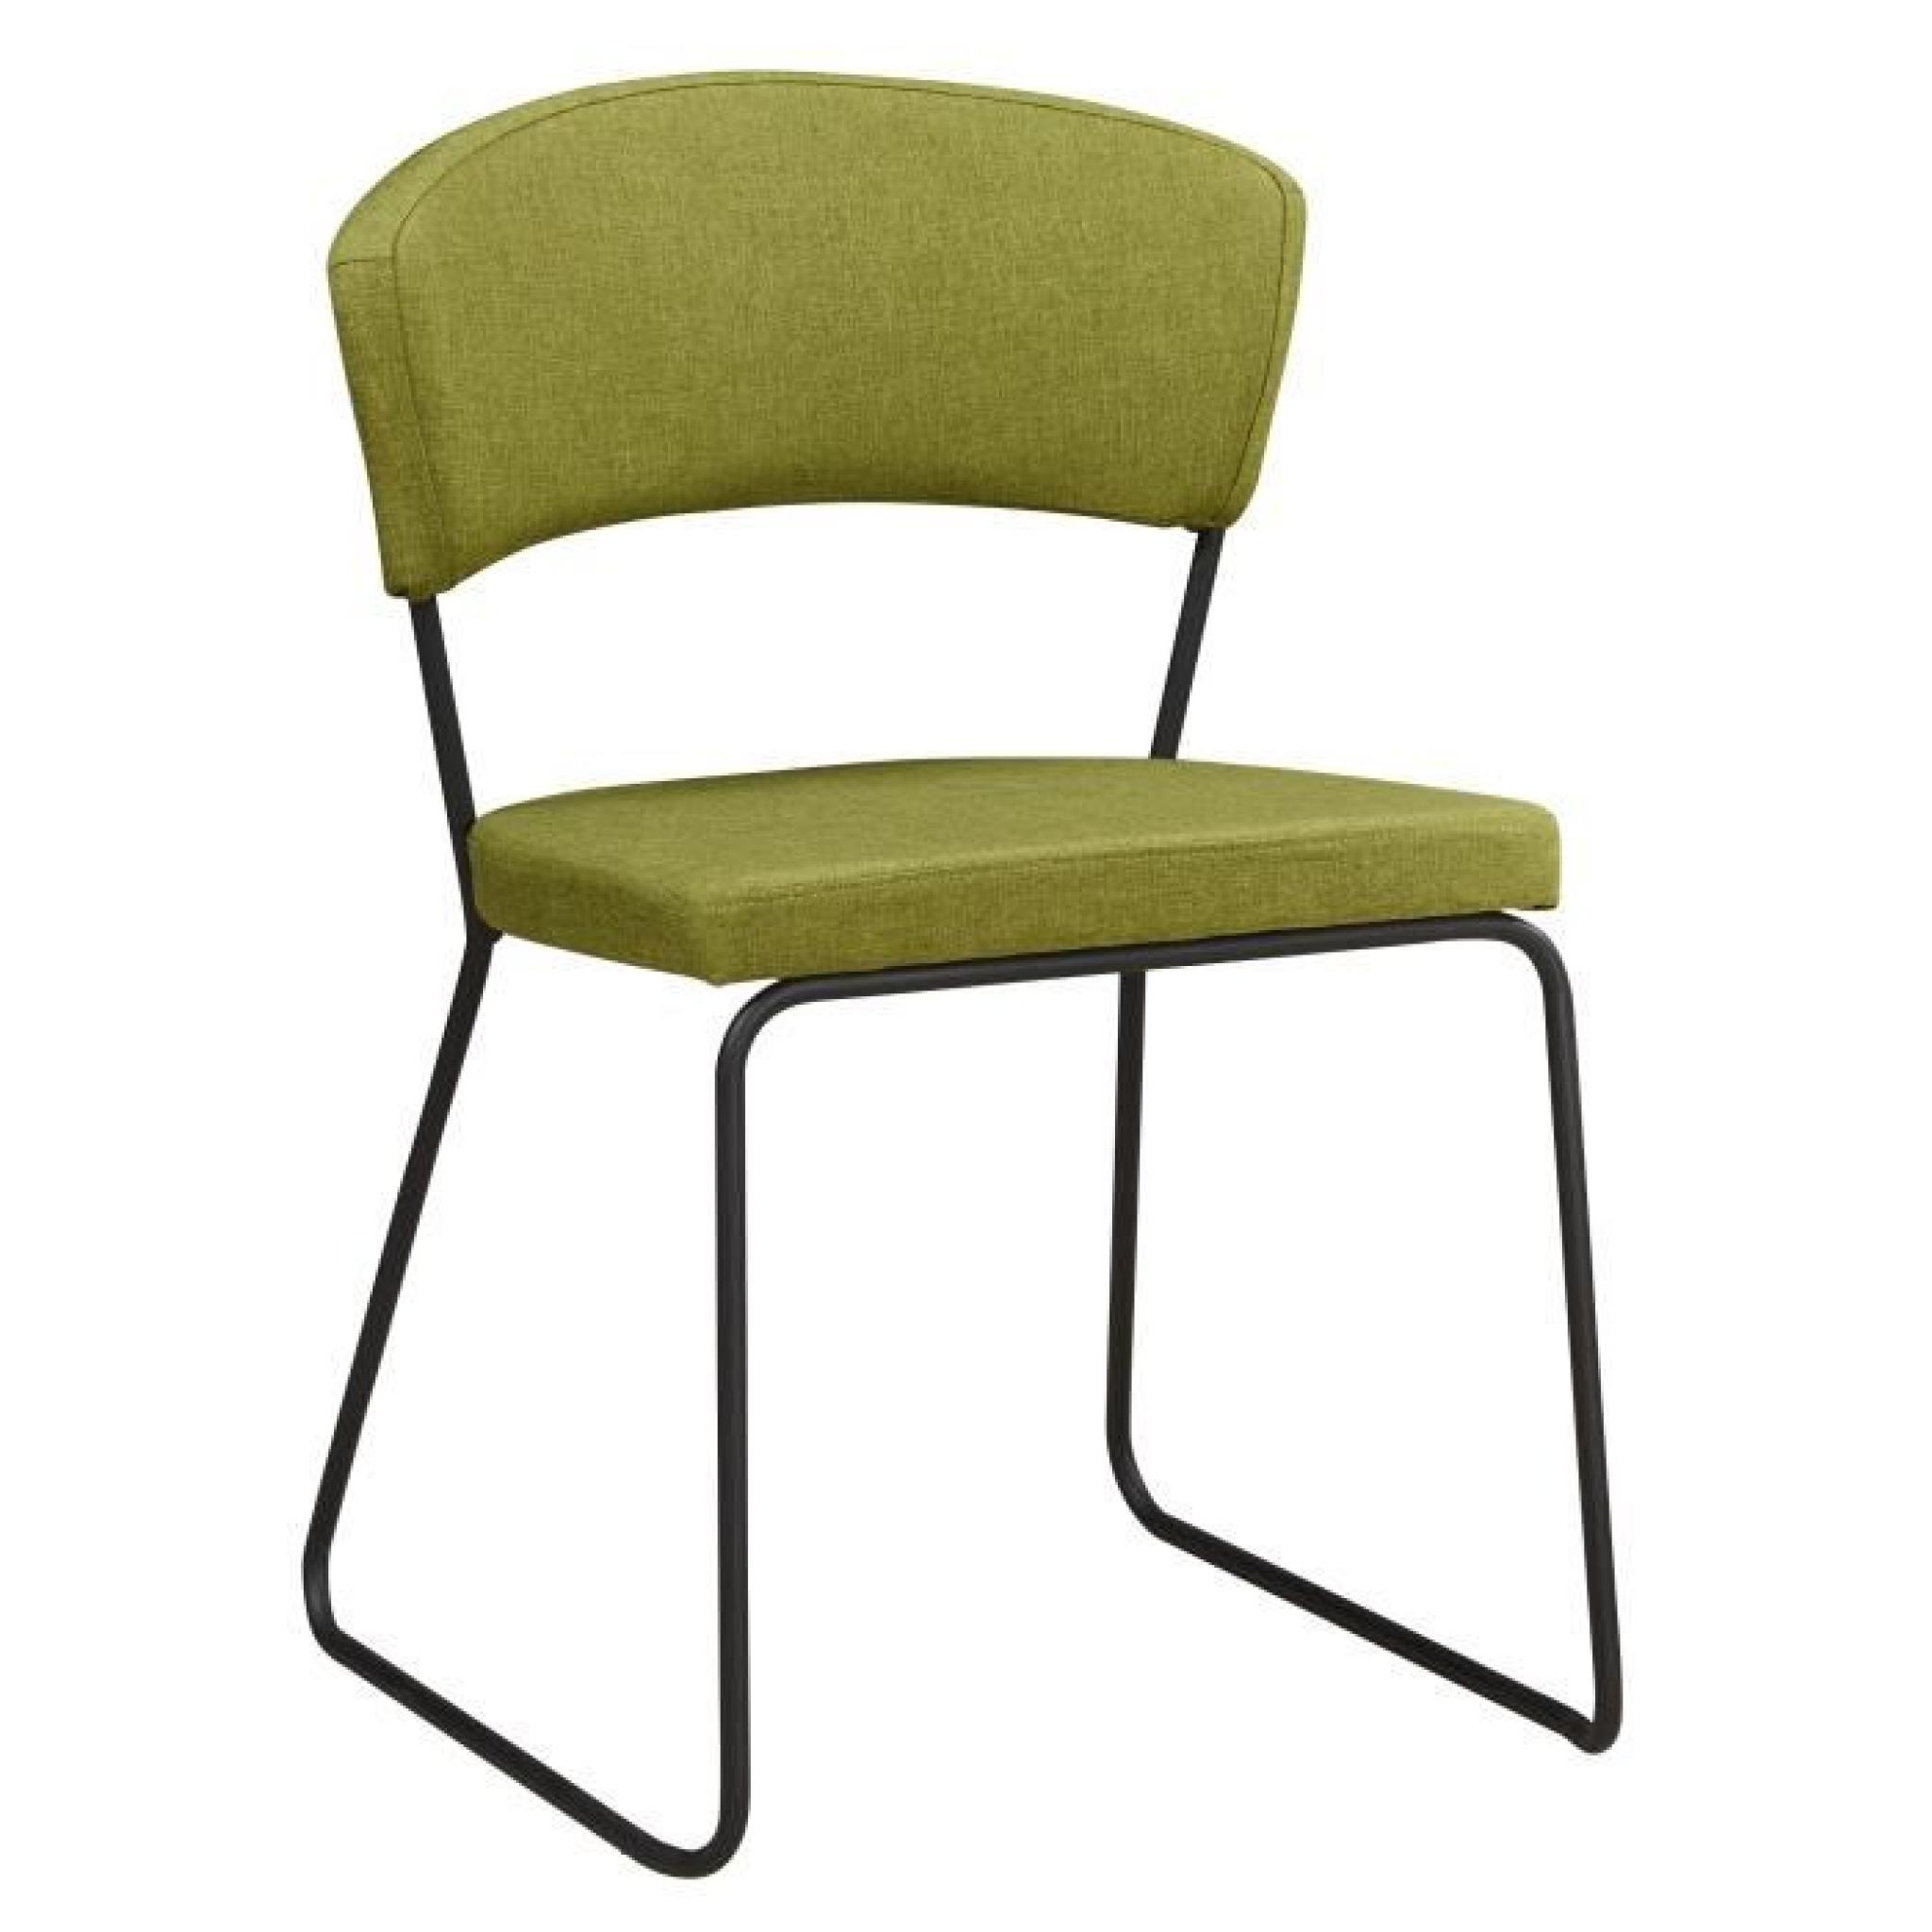 Chaise design minimaliste en tissus coloris vert olive